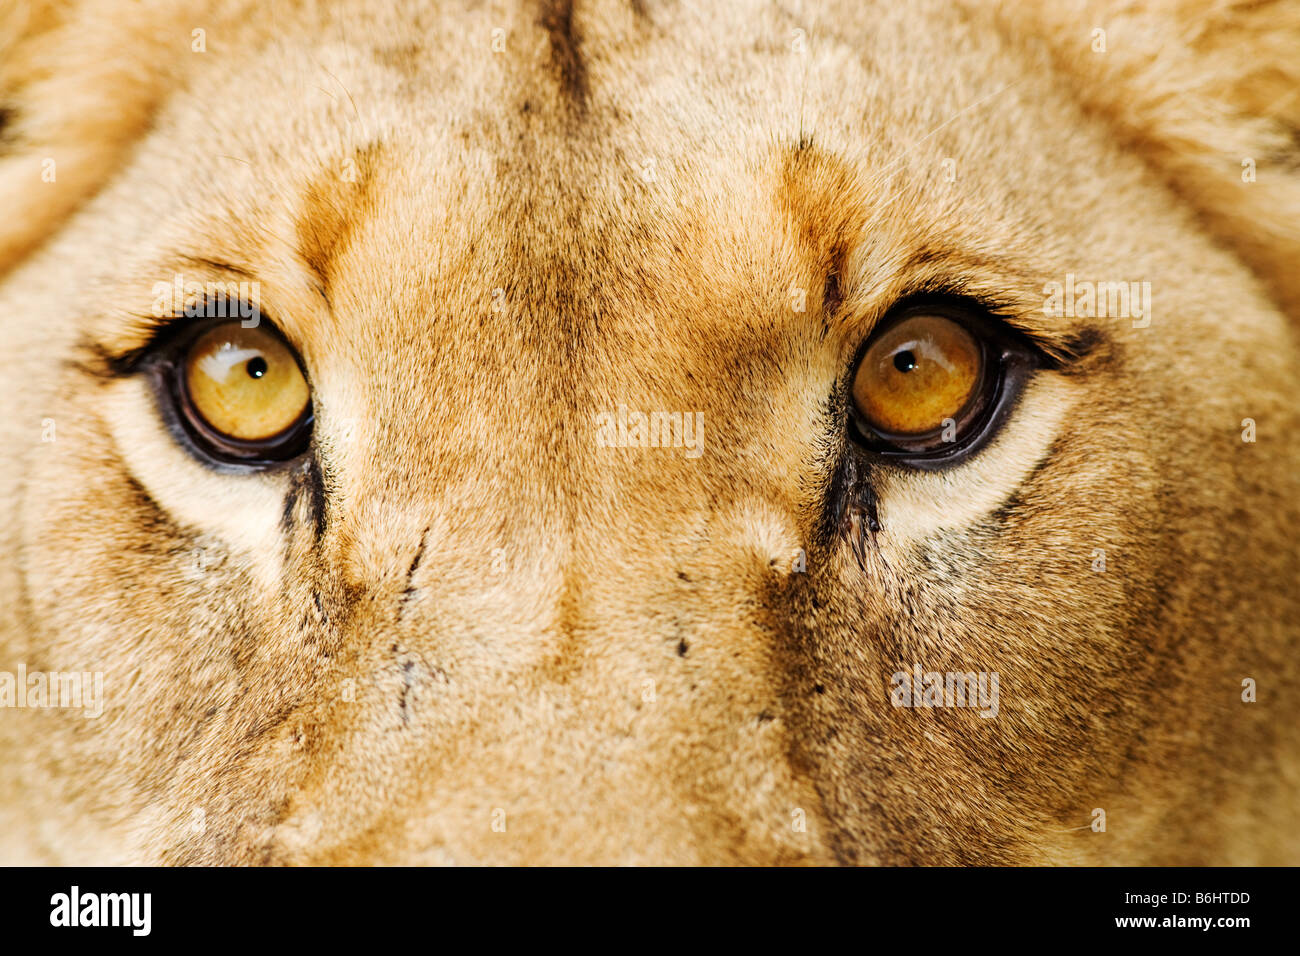 Lion Panthera leo Close up of a lioness Dist Sub Saharan Africa Stock Photo